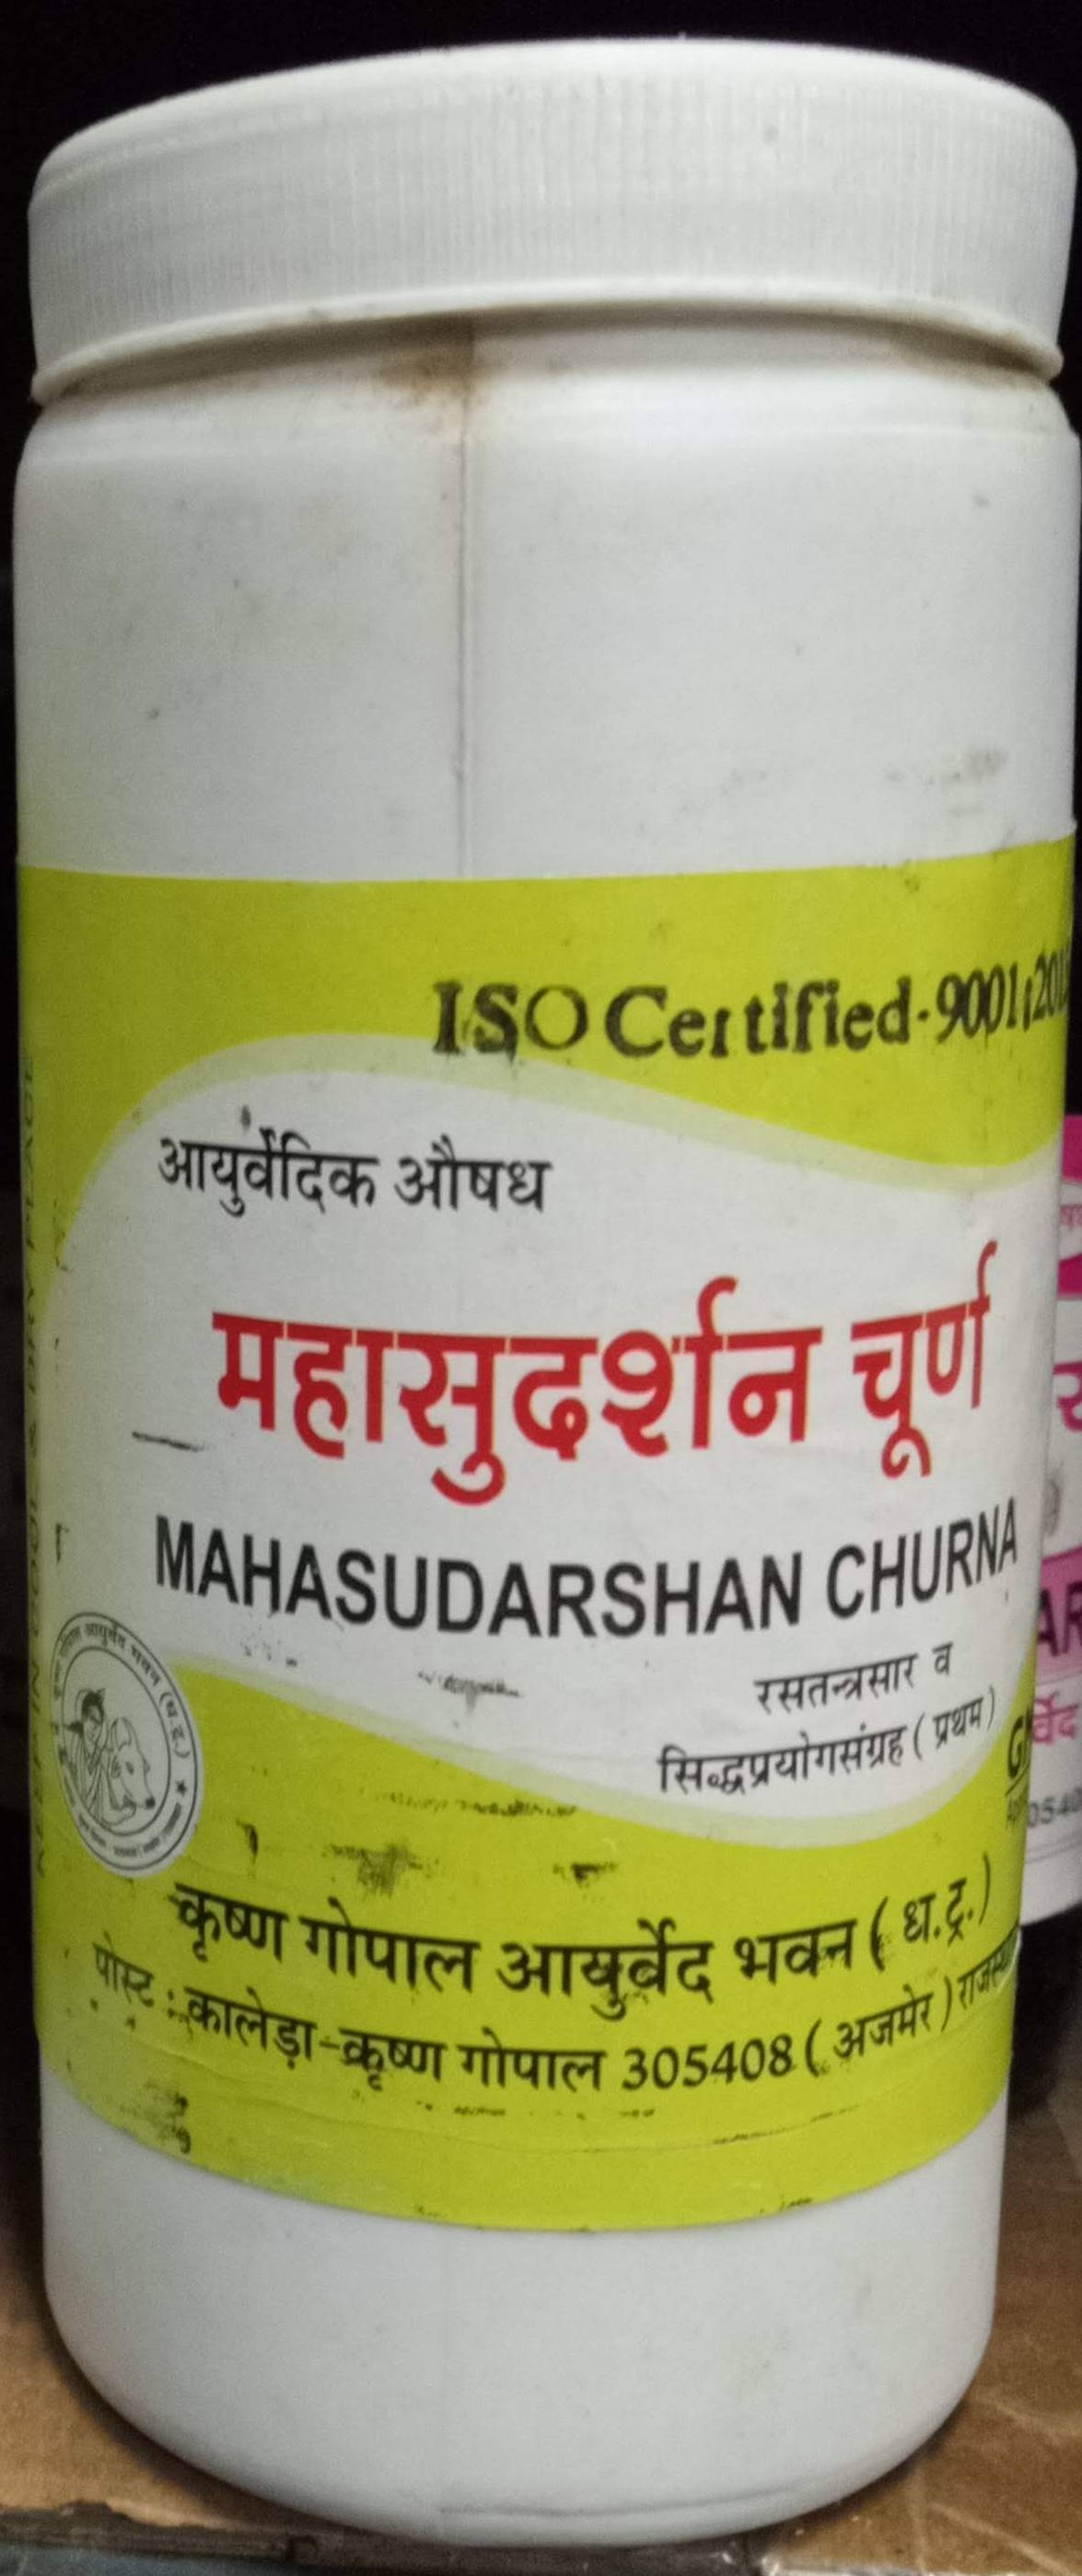 mahasudarshan churna 50 gm upto 20% off krishna gopal ayurved bhavan